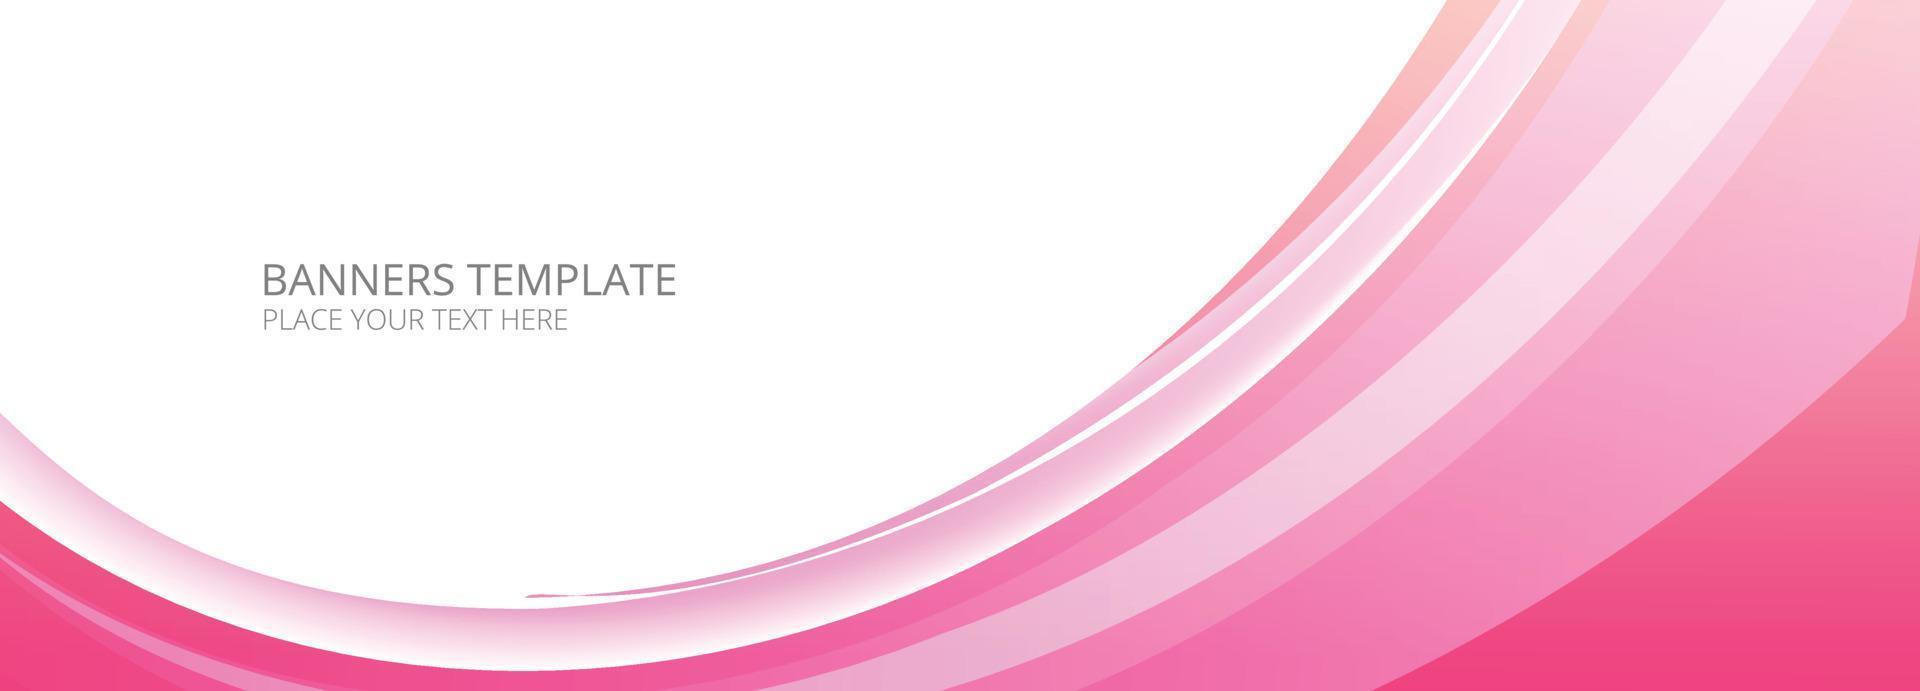 bandeira de onda rosa fluindo moderna no fundo branco vetor